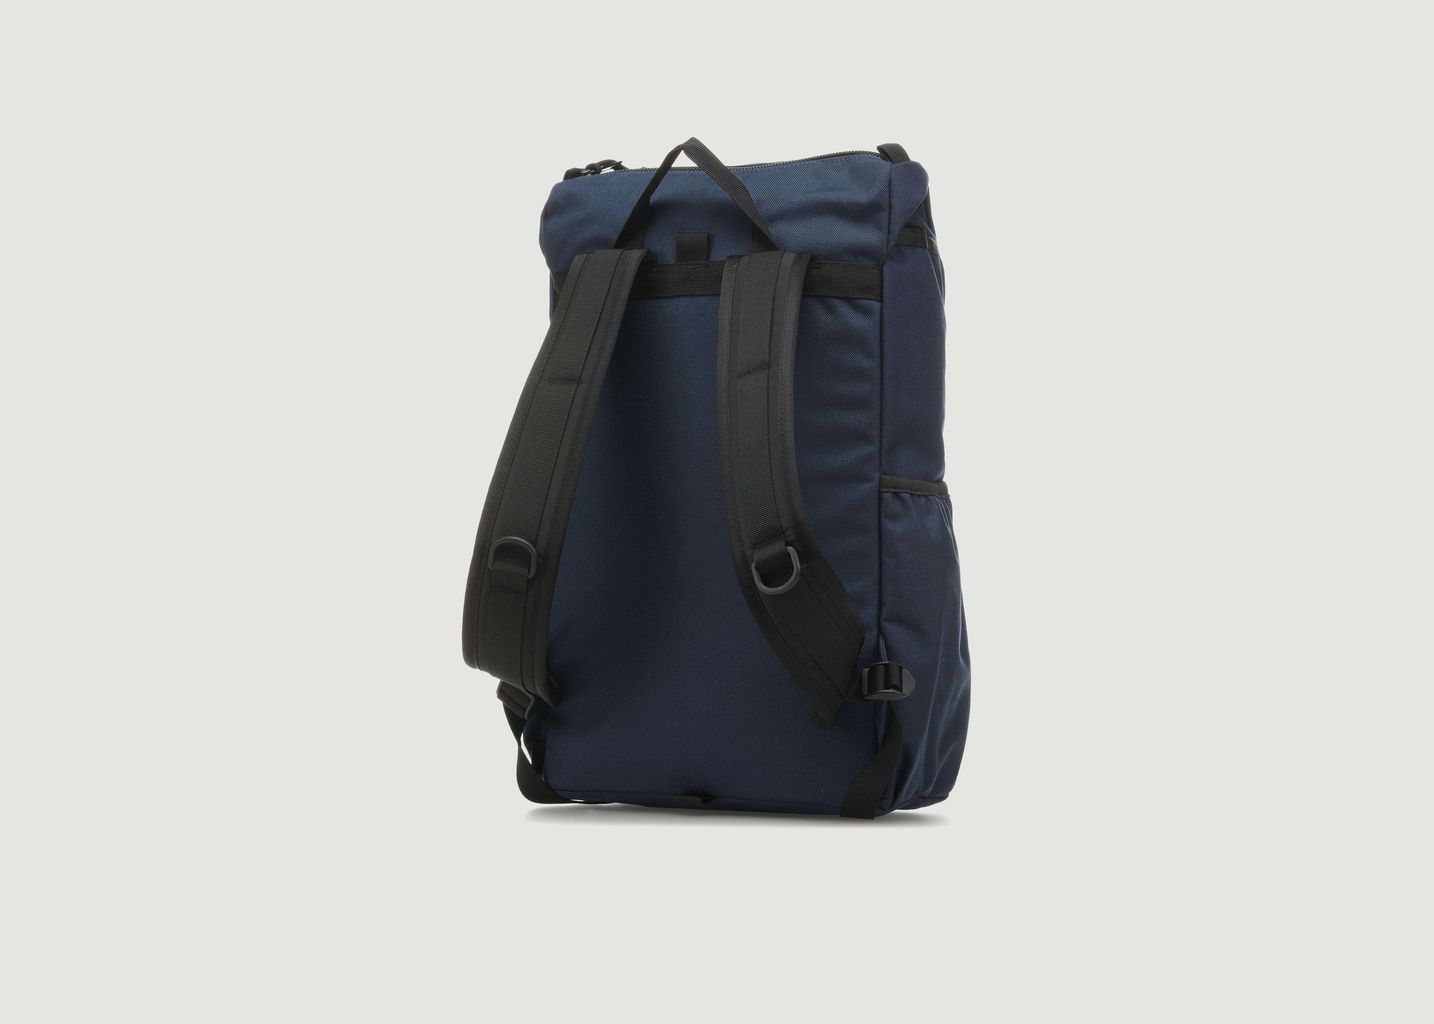 Y-Pack Backpack - Topo Designs